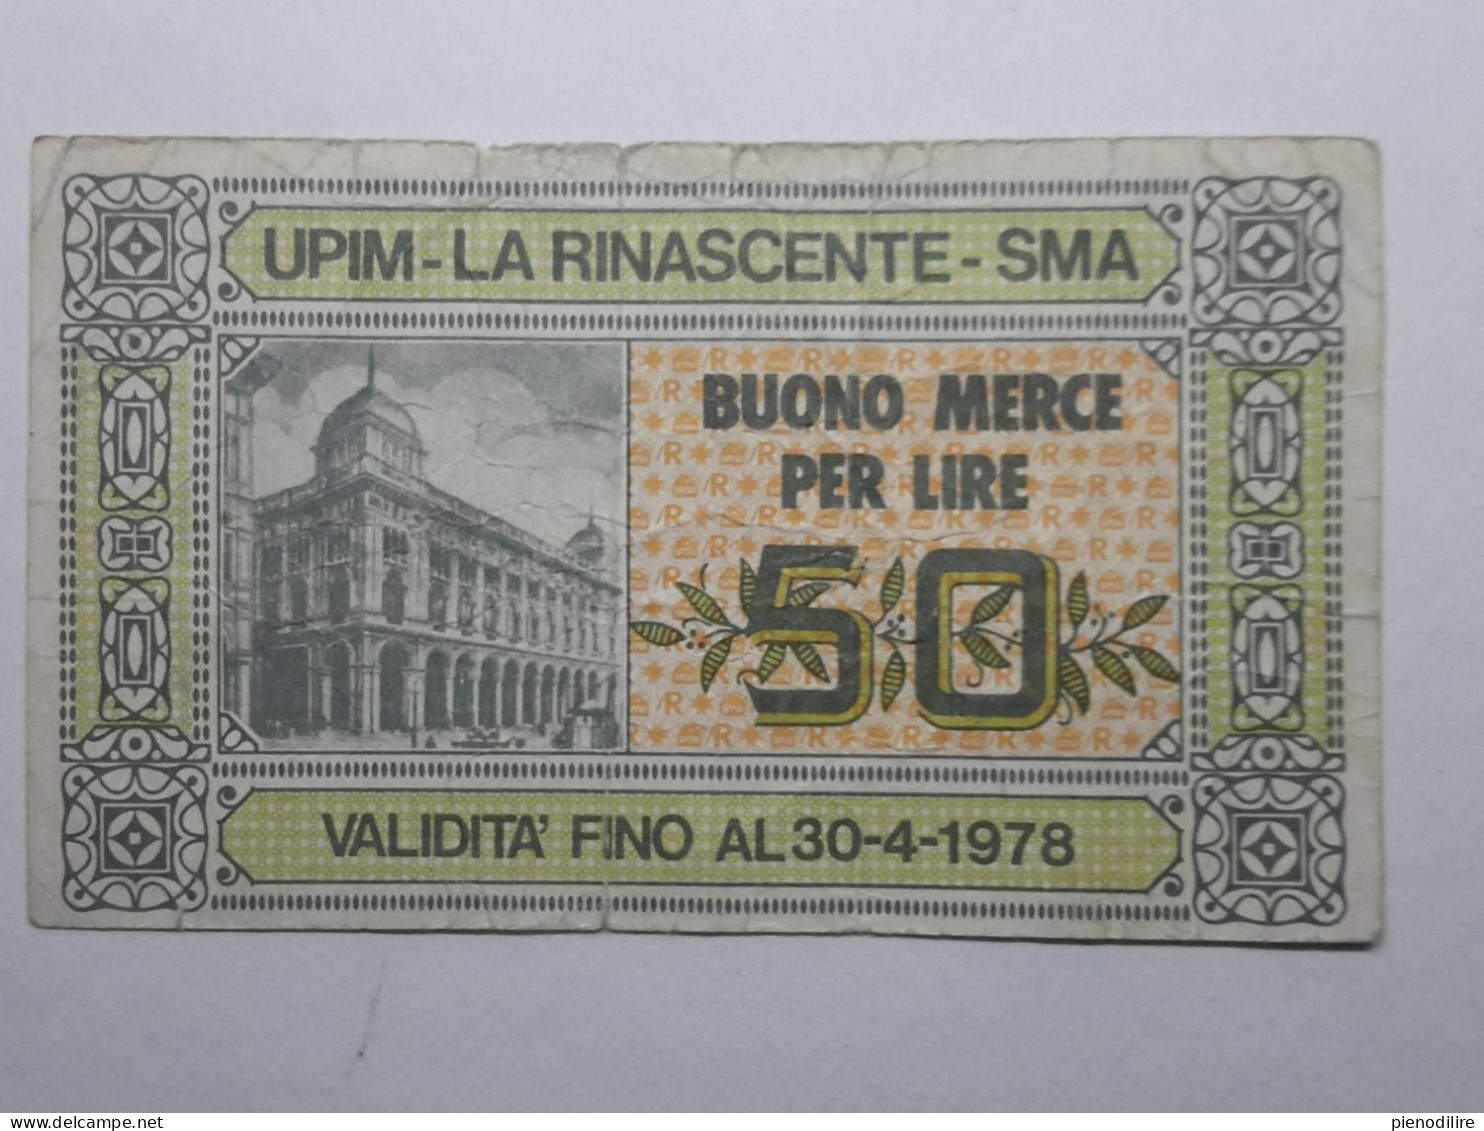 BANCONOTA BUONO D' ACQUISTO MERCE FINO A 50 LIRE UPIM LA RINASCENTE 1978 (A.10) - [10] Checks And Mini-checks